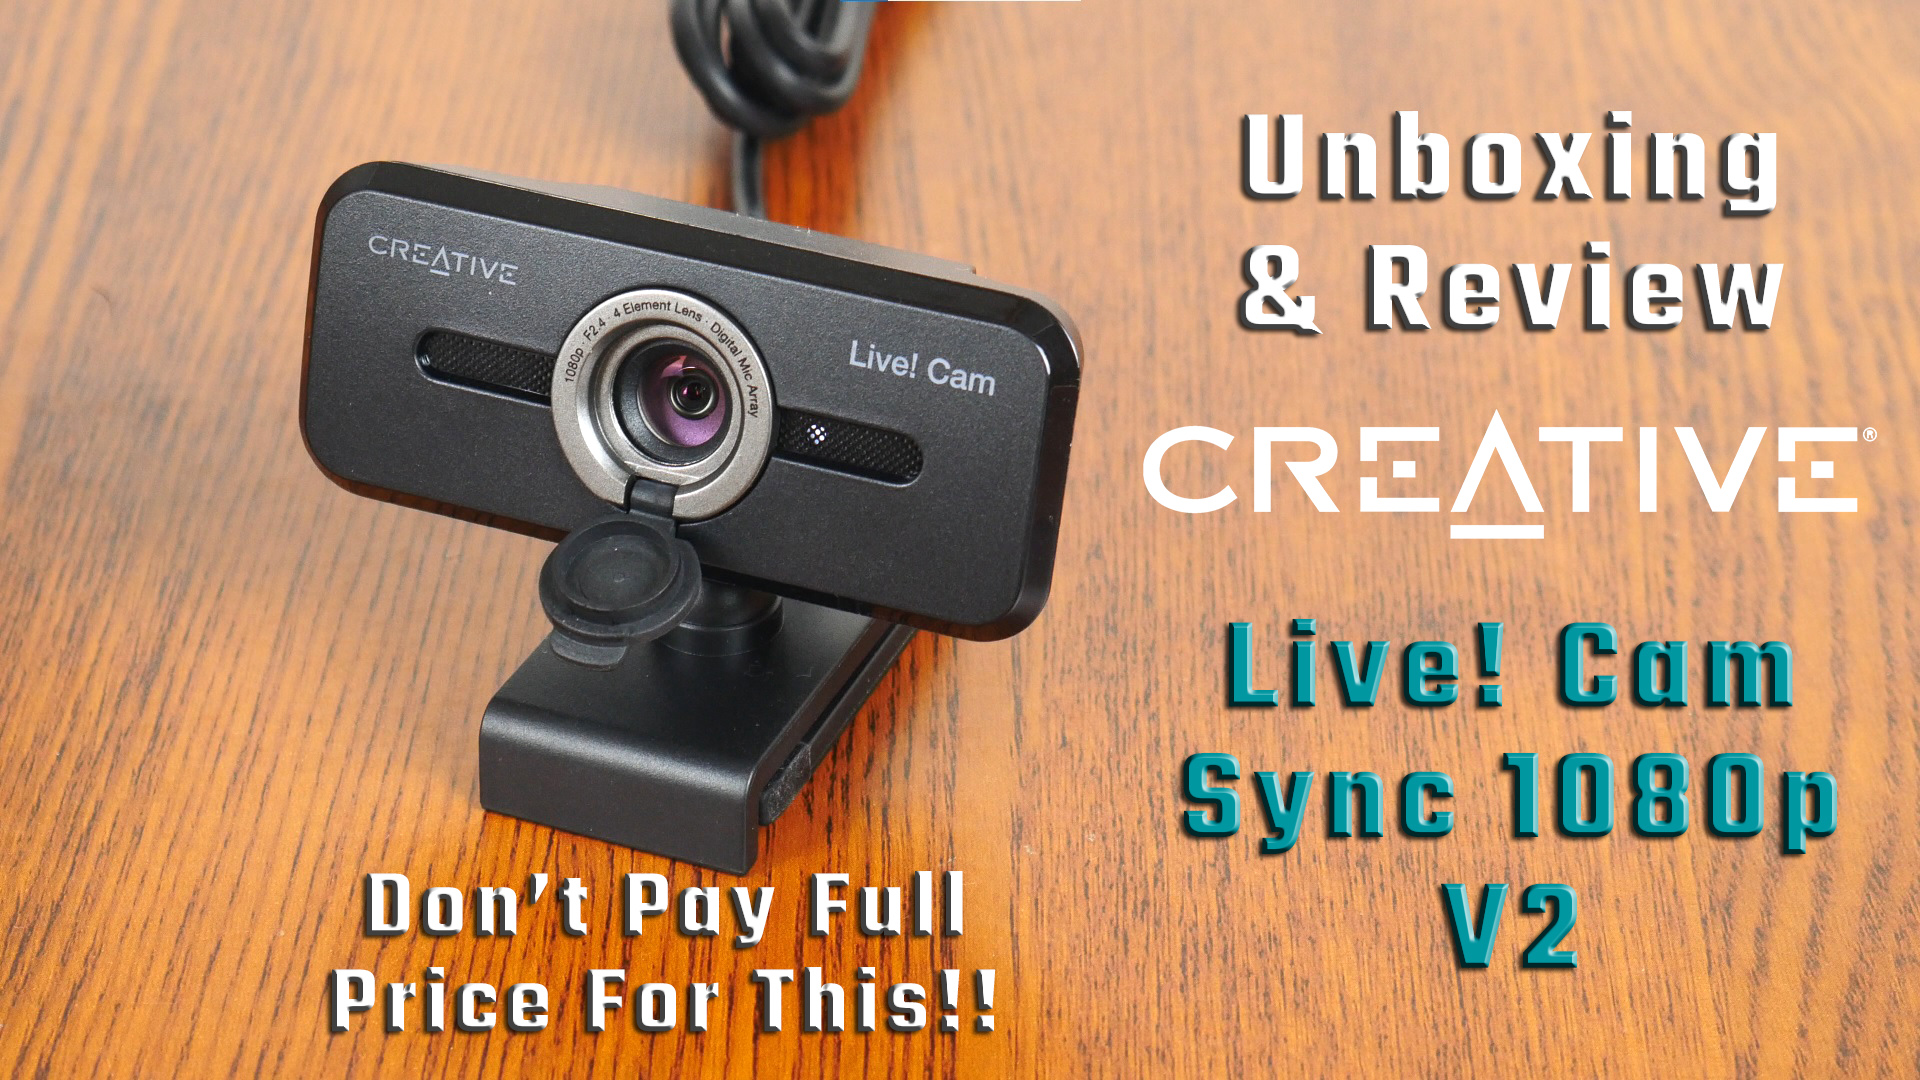 Creative Live! Cam Sync 1080p V2 Webcam Review